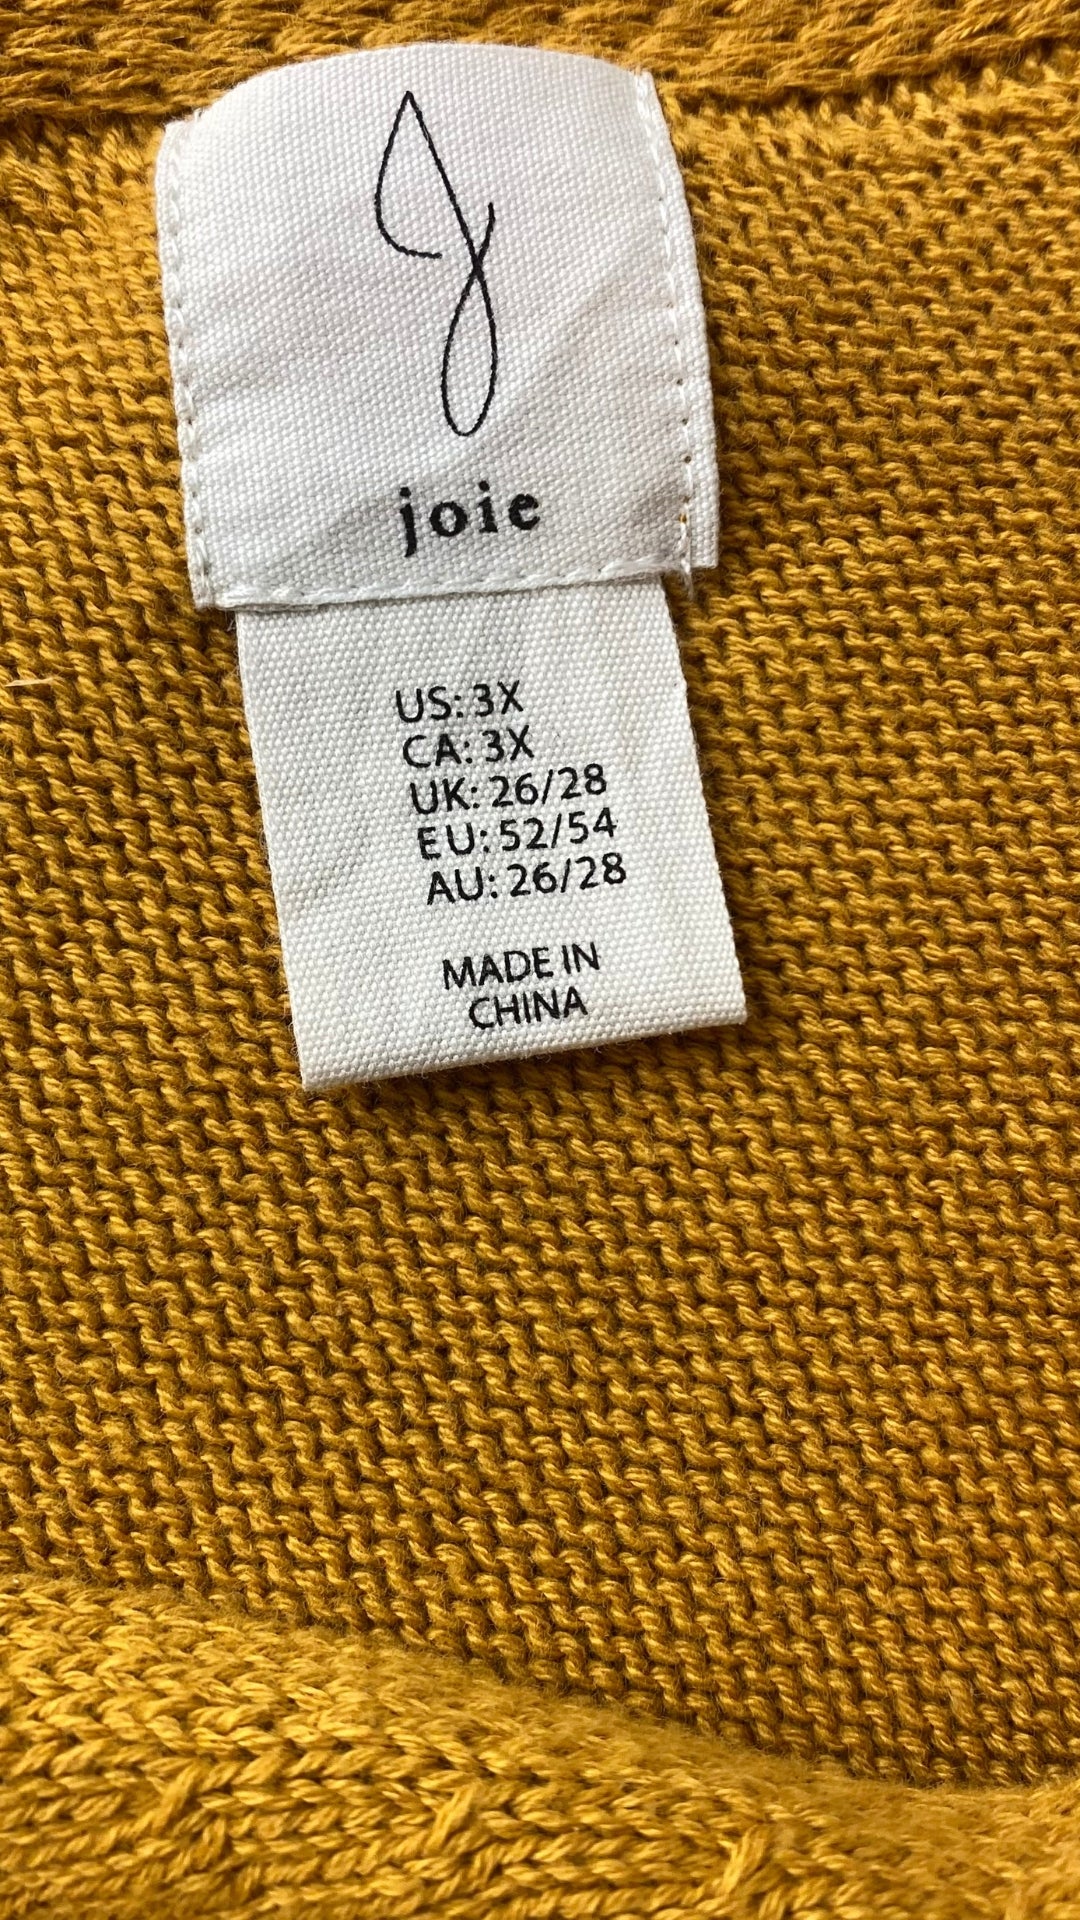 Chandail tricot manche cape ocre Joie, taille 3X. Vue de l'étiquette de marque et taille.